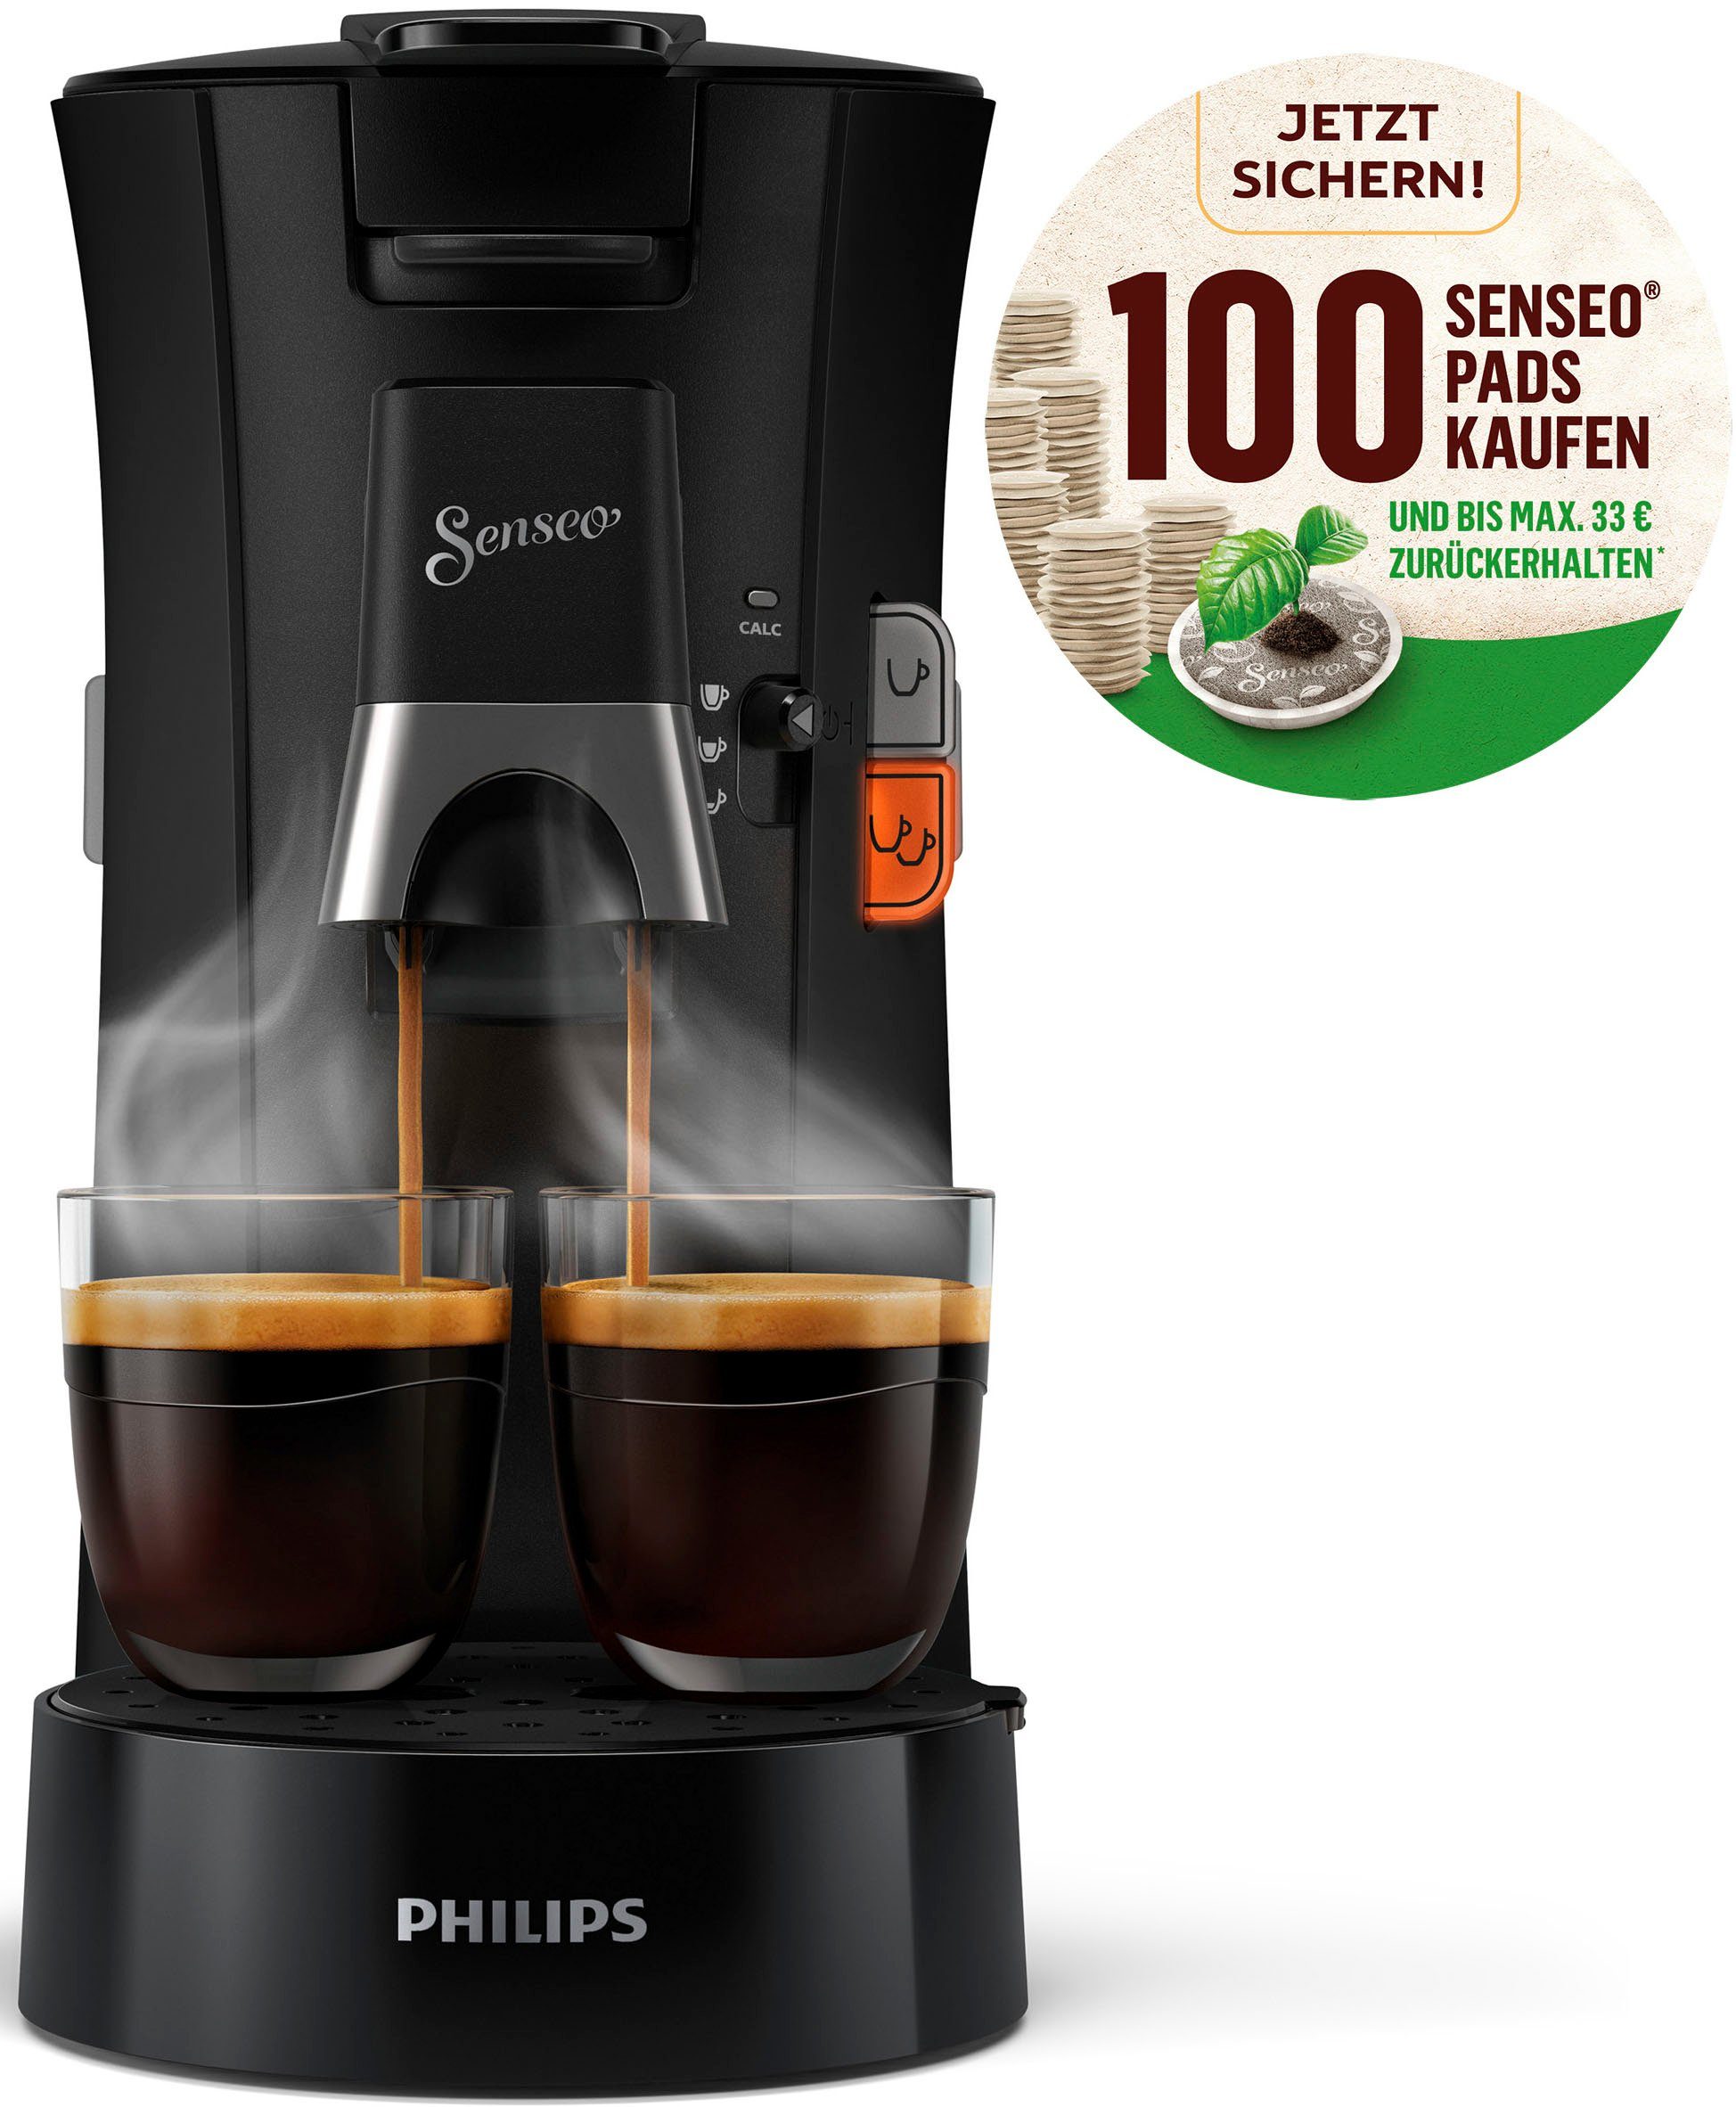 Kaffeepadmaschine Select CSA230/69, 100 Senseo Pads kaufen und bis max.33 €  zurückerhalten